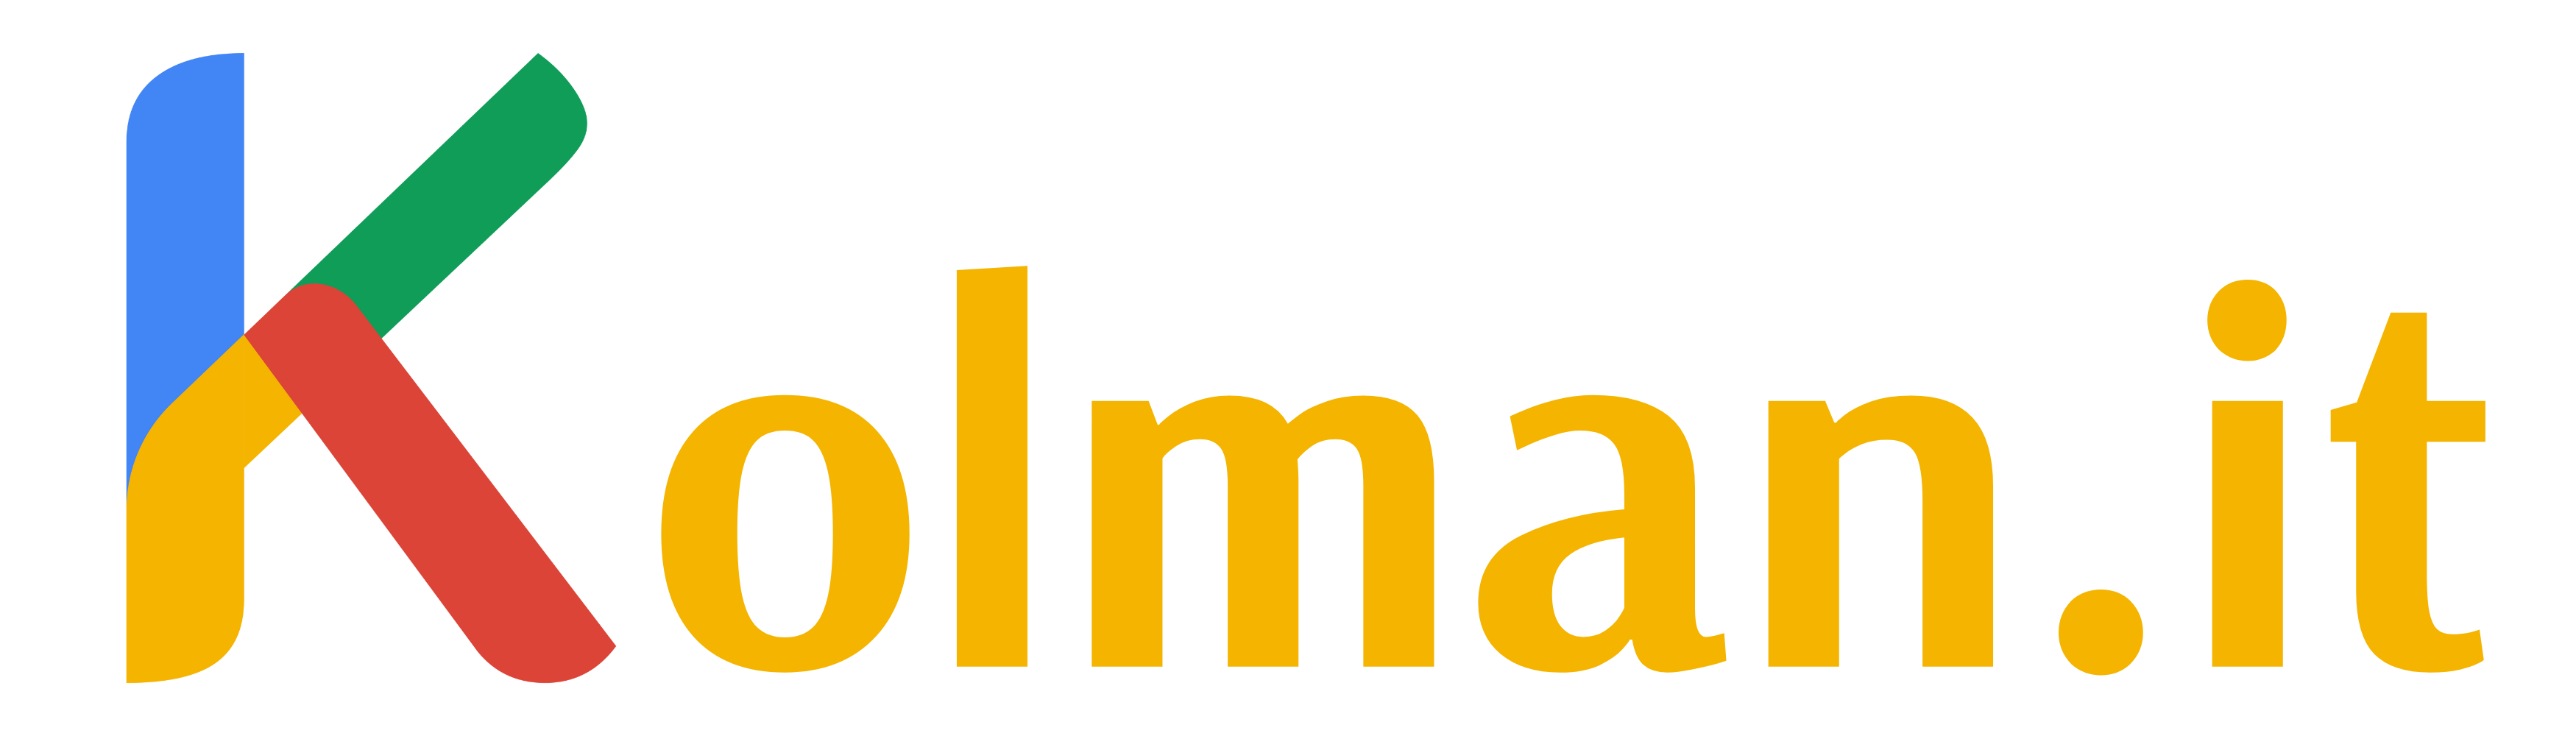 Kolman.it logo SEO Optimalizace